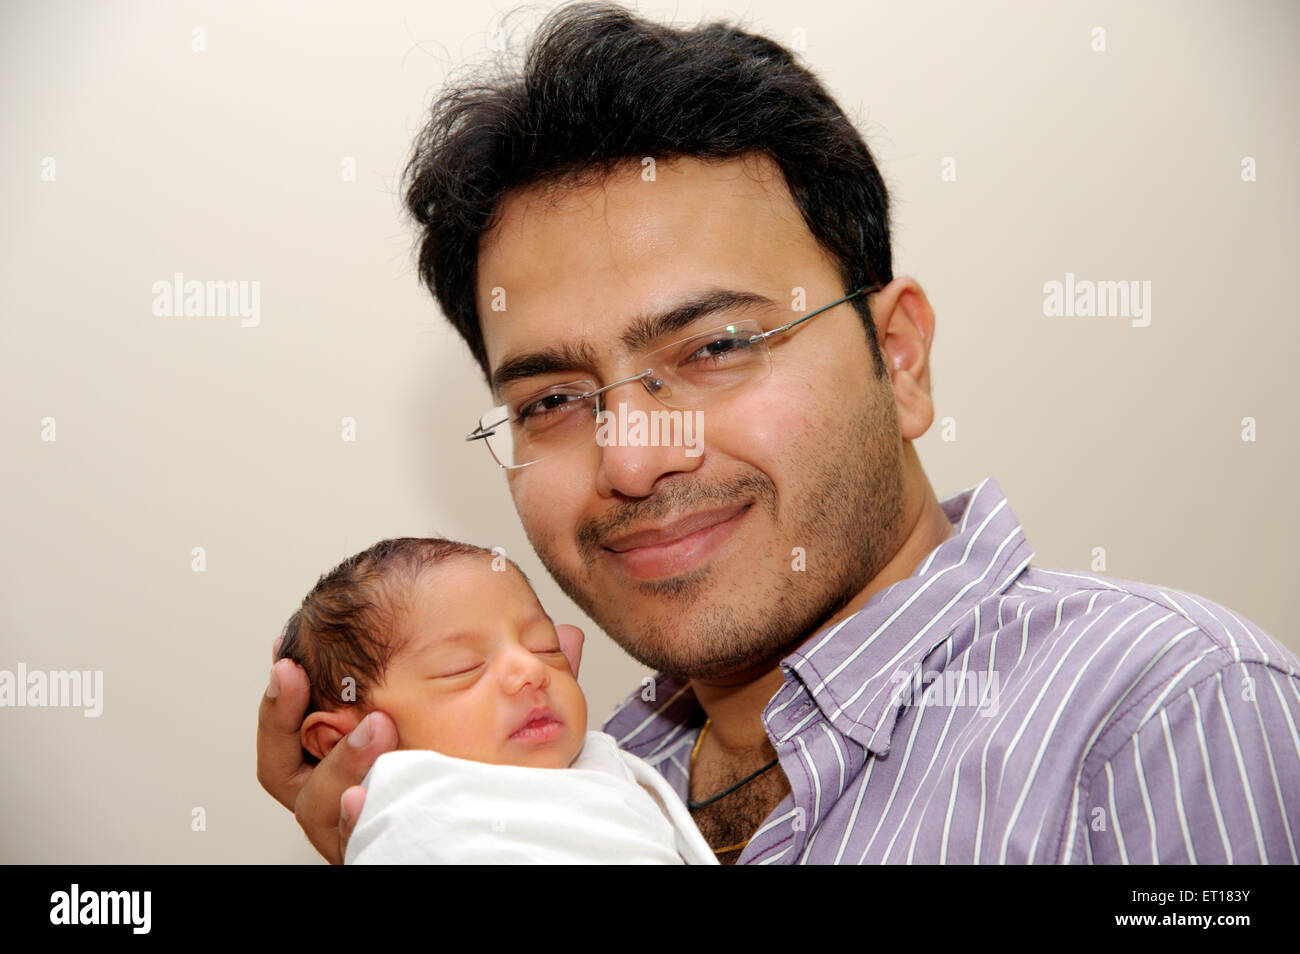 Bebé recién nacido con el tío señor#736J MR#736LA Foto de stock